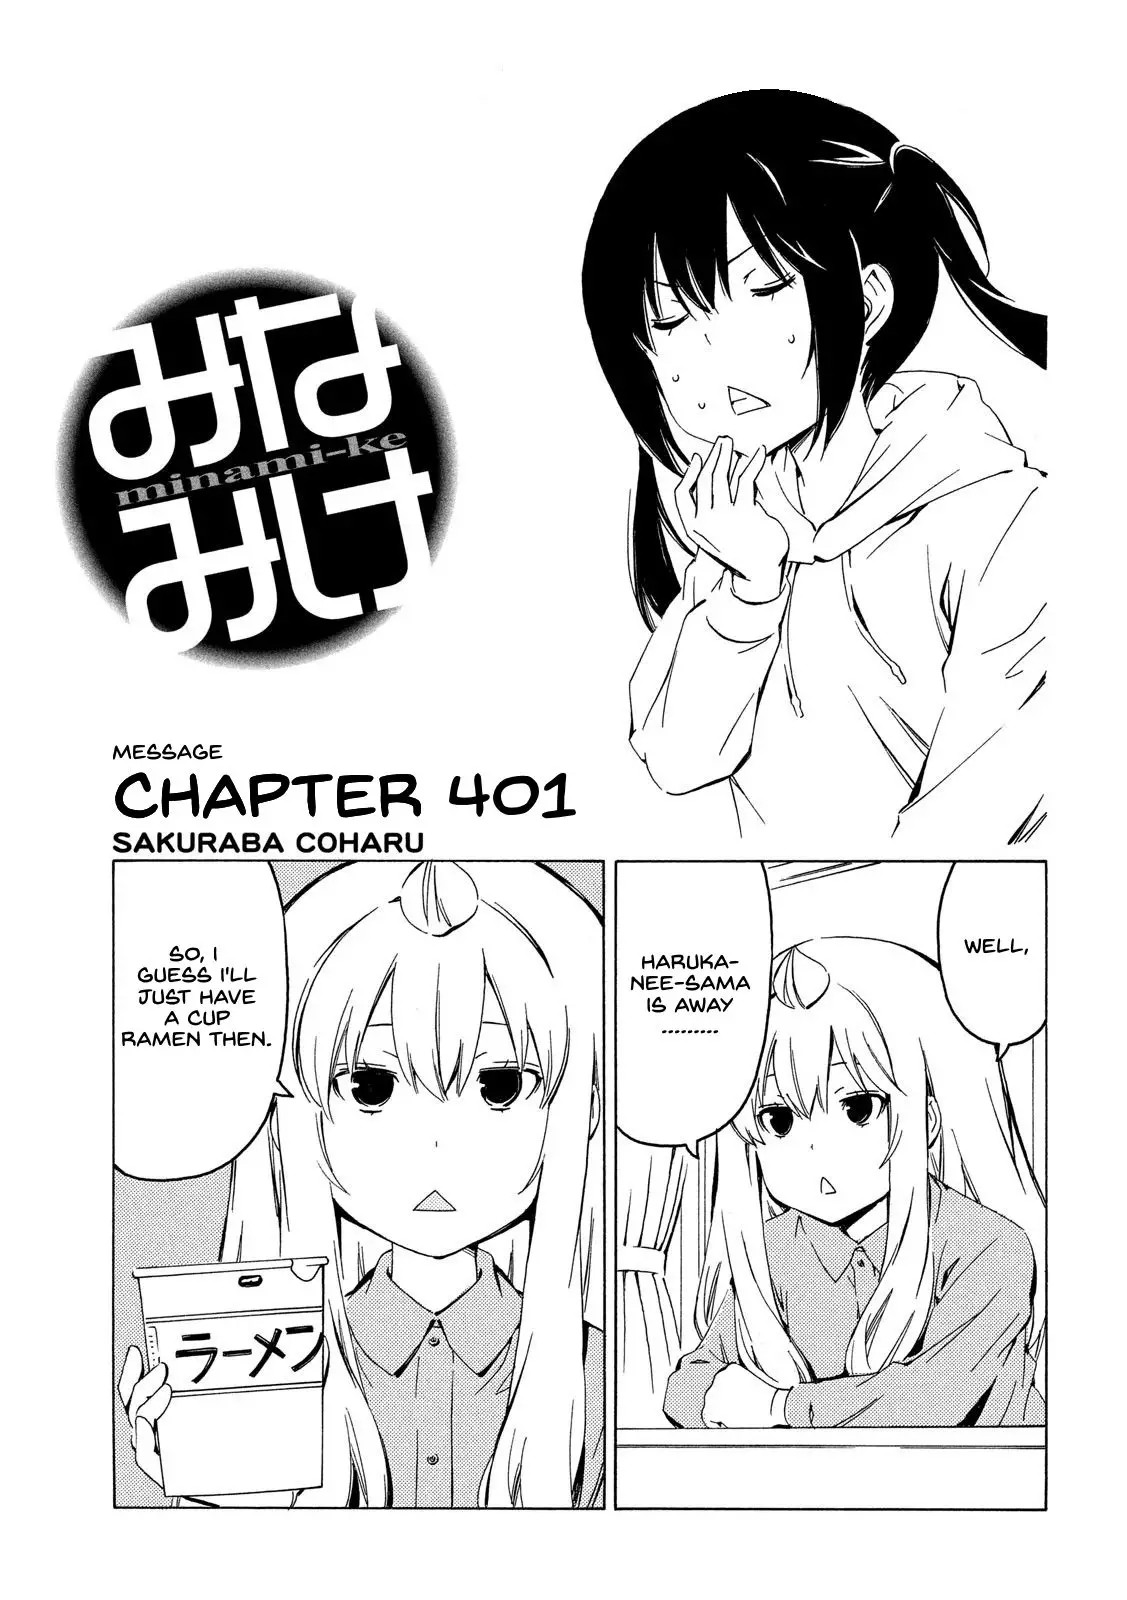 Minami-ke - 401 page 1